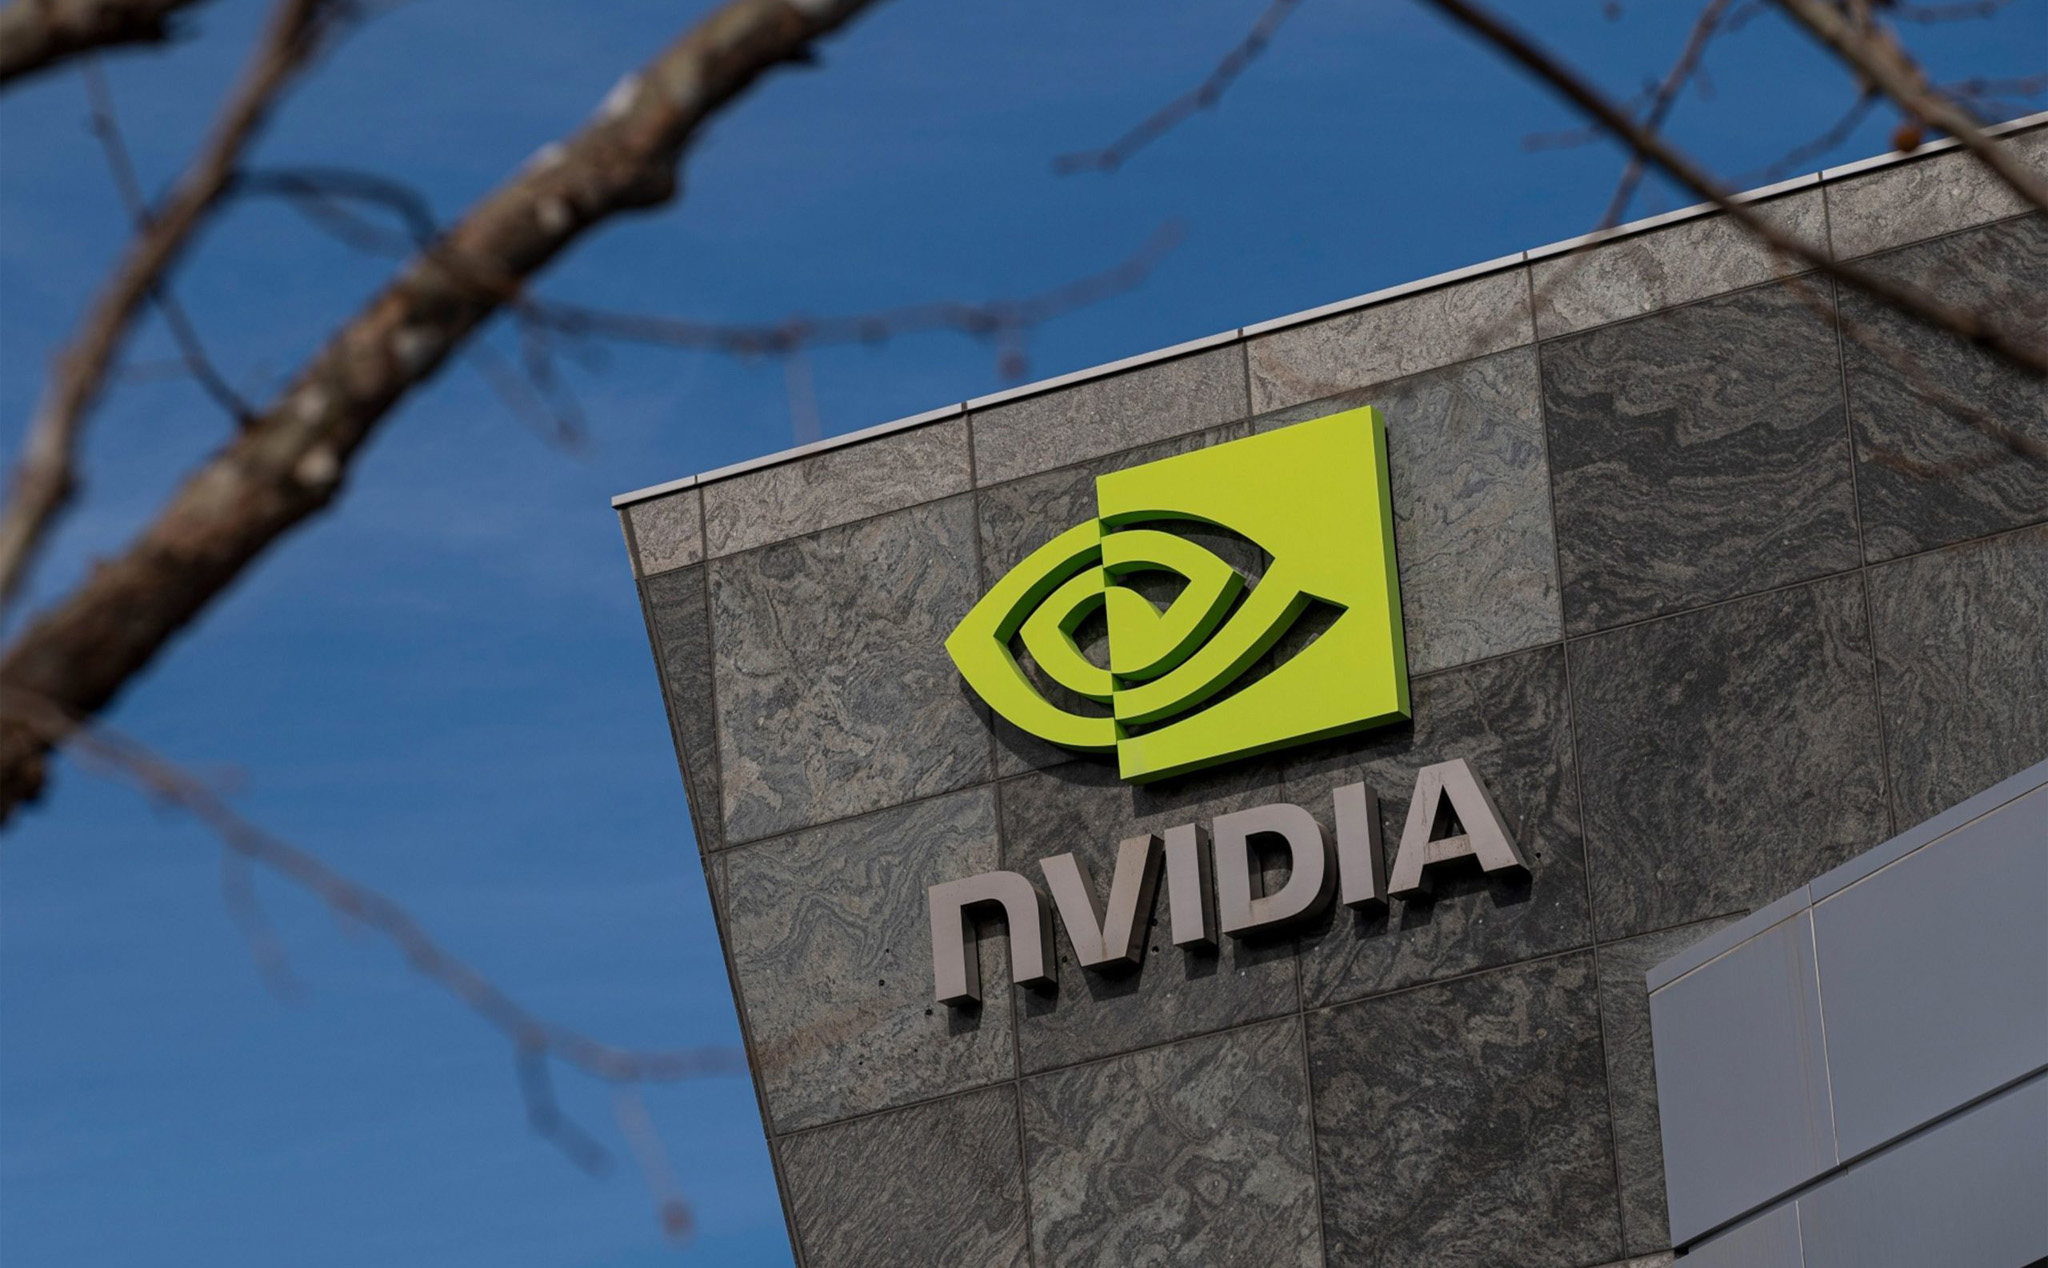 Chính quyền Anh có thể sẽ chặn đứng thương vụ Nvidia mua lại ARM, viện lý do an ninh công nghệ